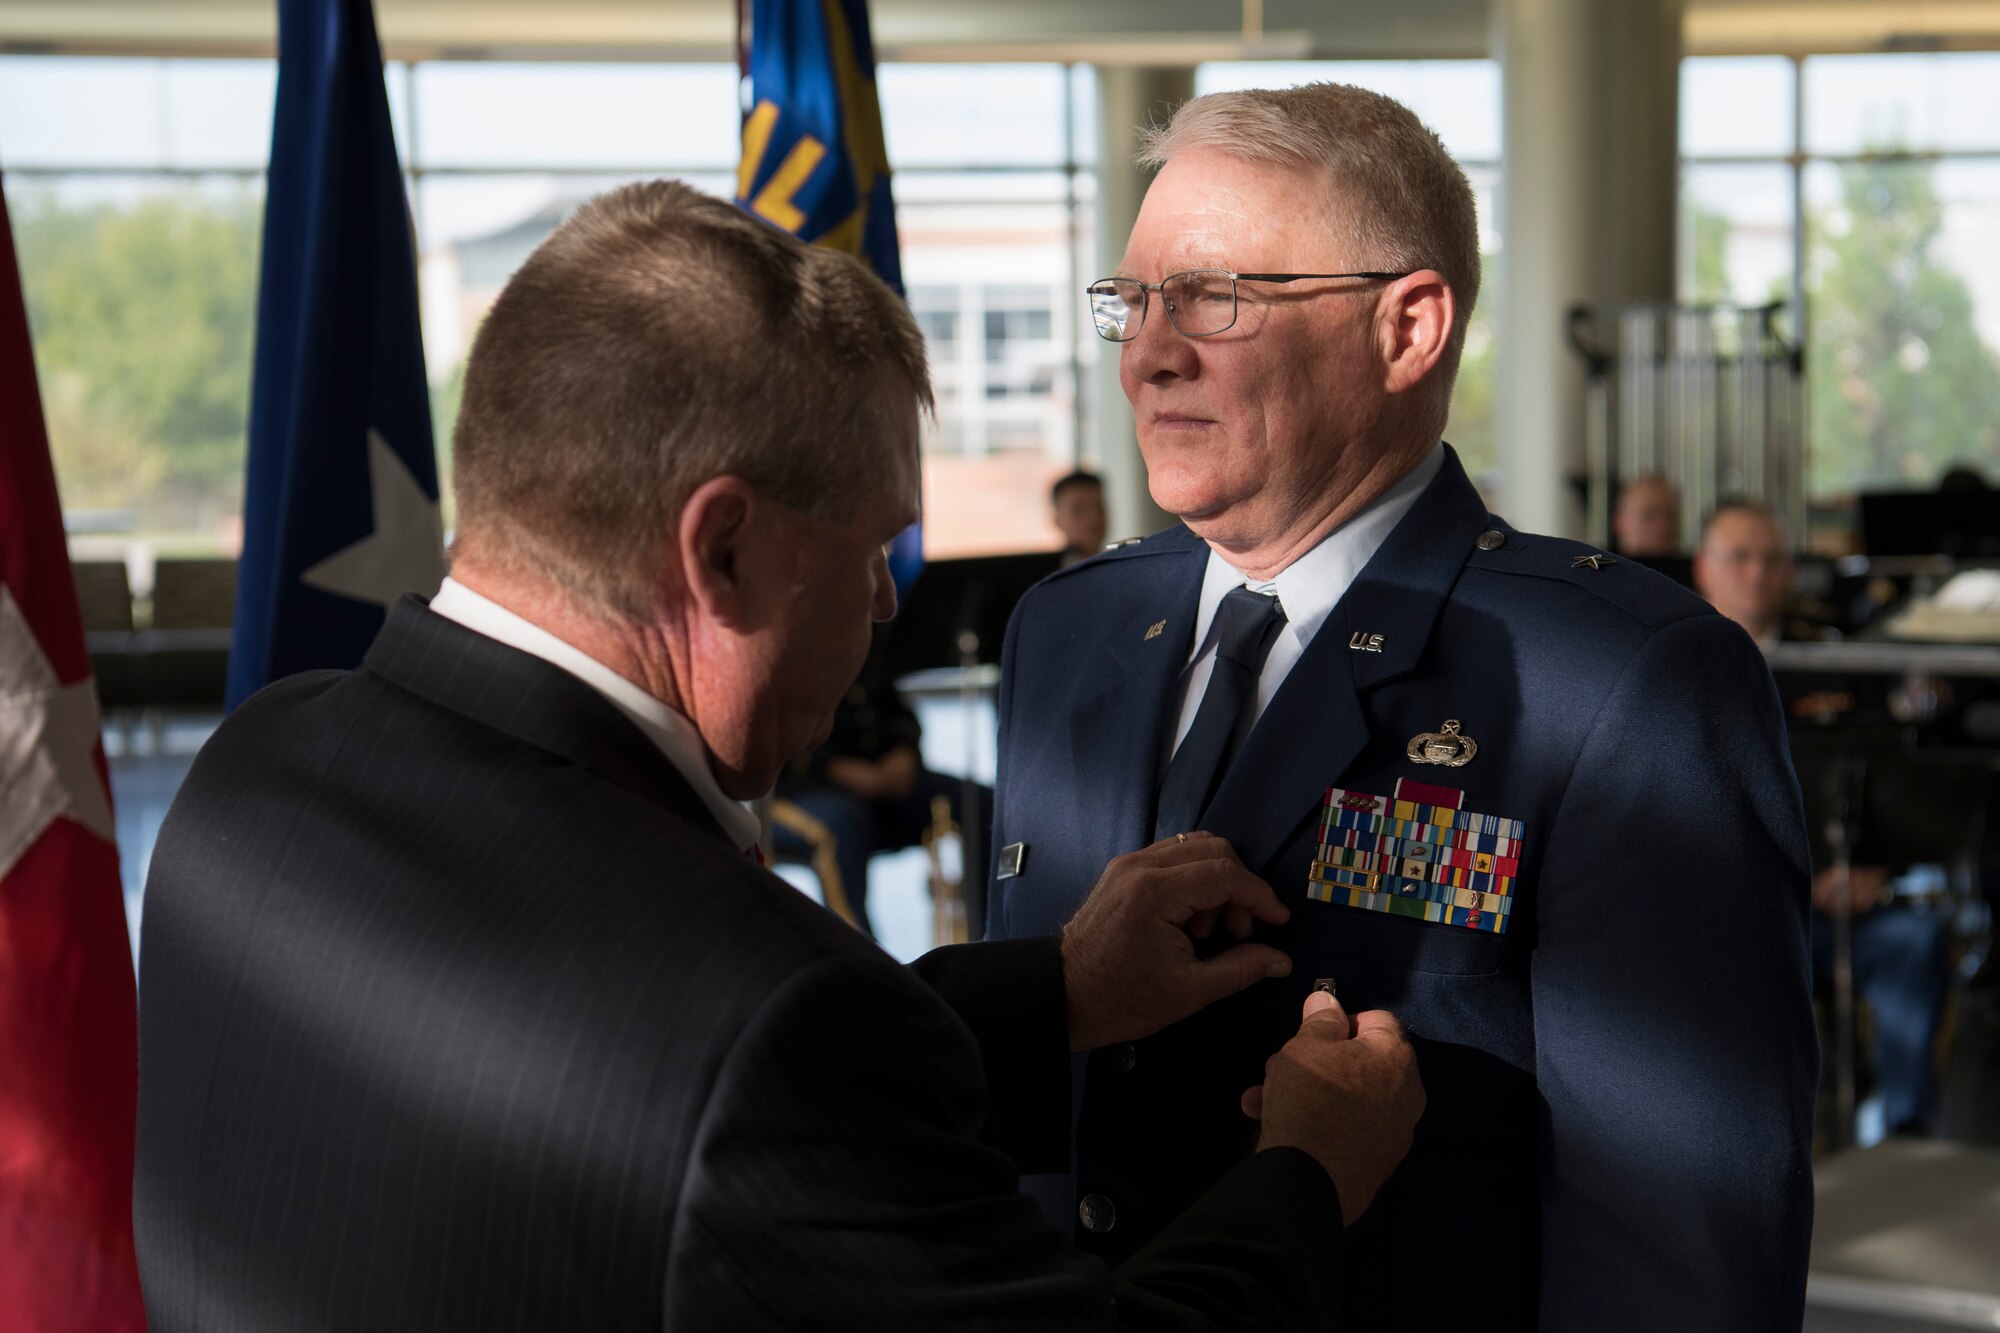 Brig. Gen. Jacobs receives the Distinguished Service Medal